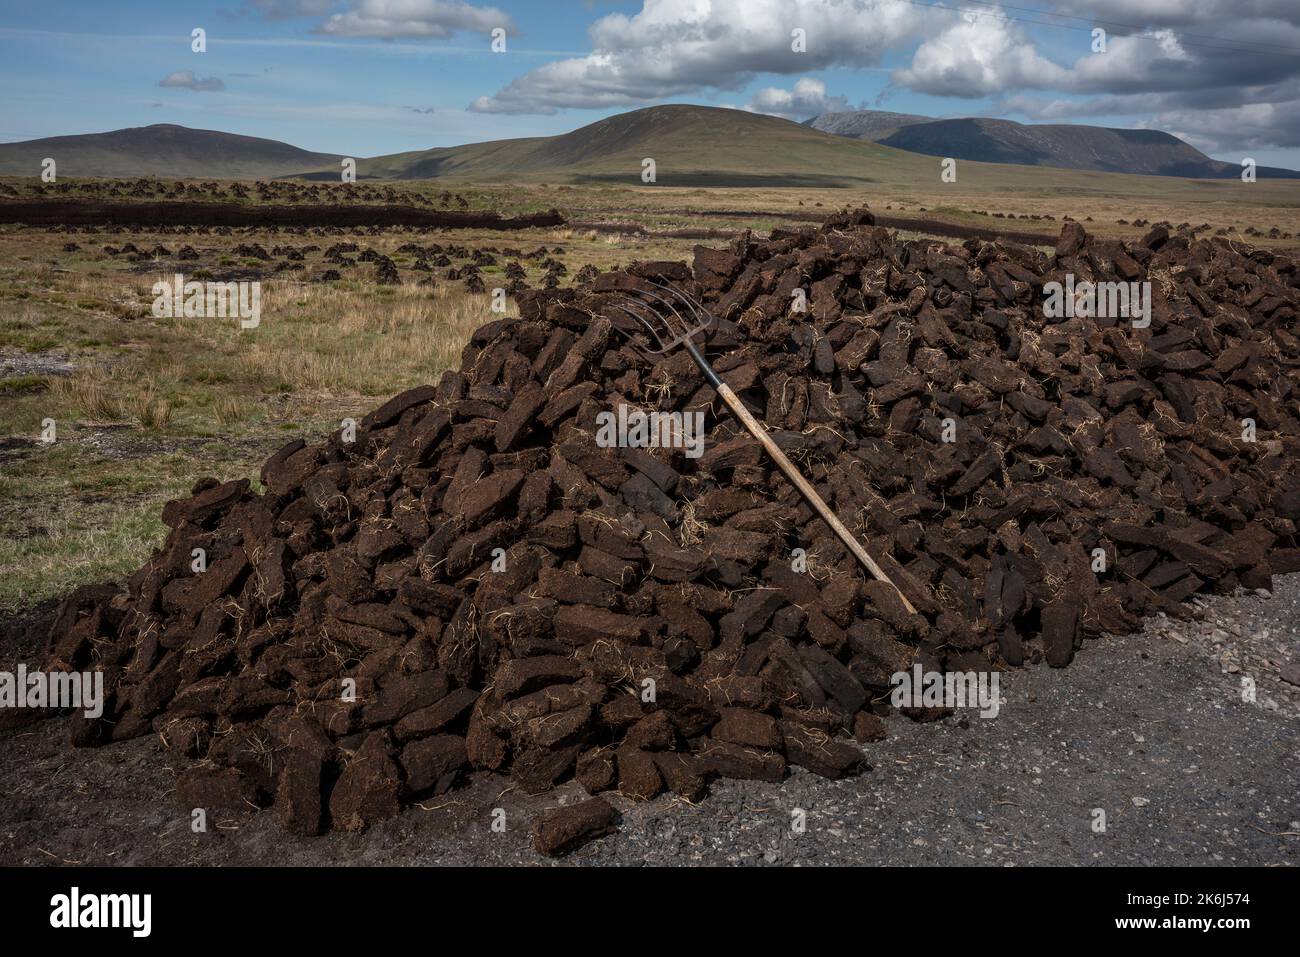 La tourbe coupée à la main sèche dans le vaste paysage du nord-ouest de l'Irlande. Banque D'Images